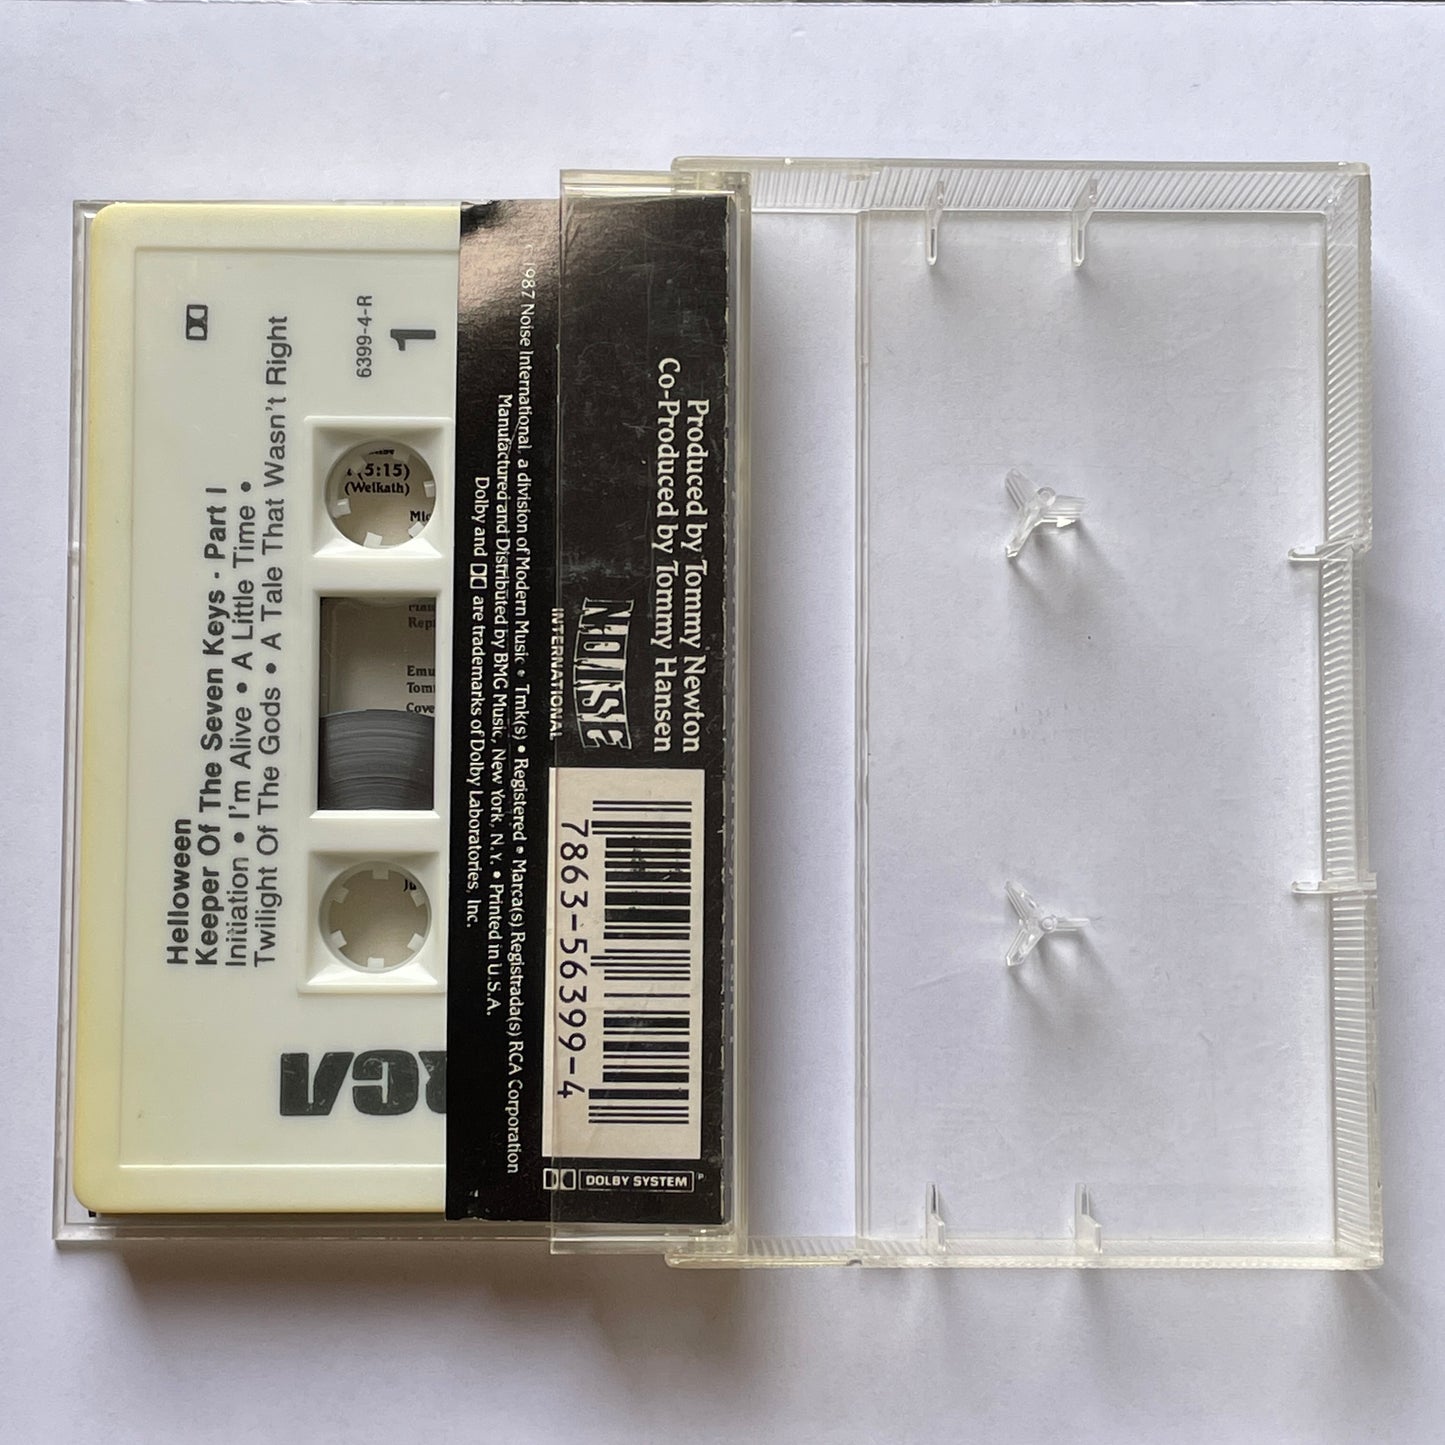 Helloween - Keeper of the Seven Keys Part 1 original cassette tape